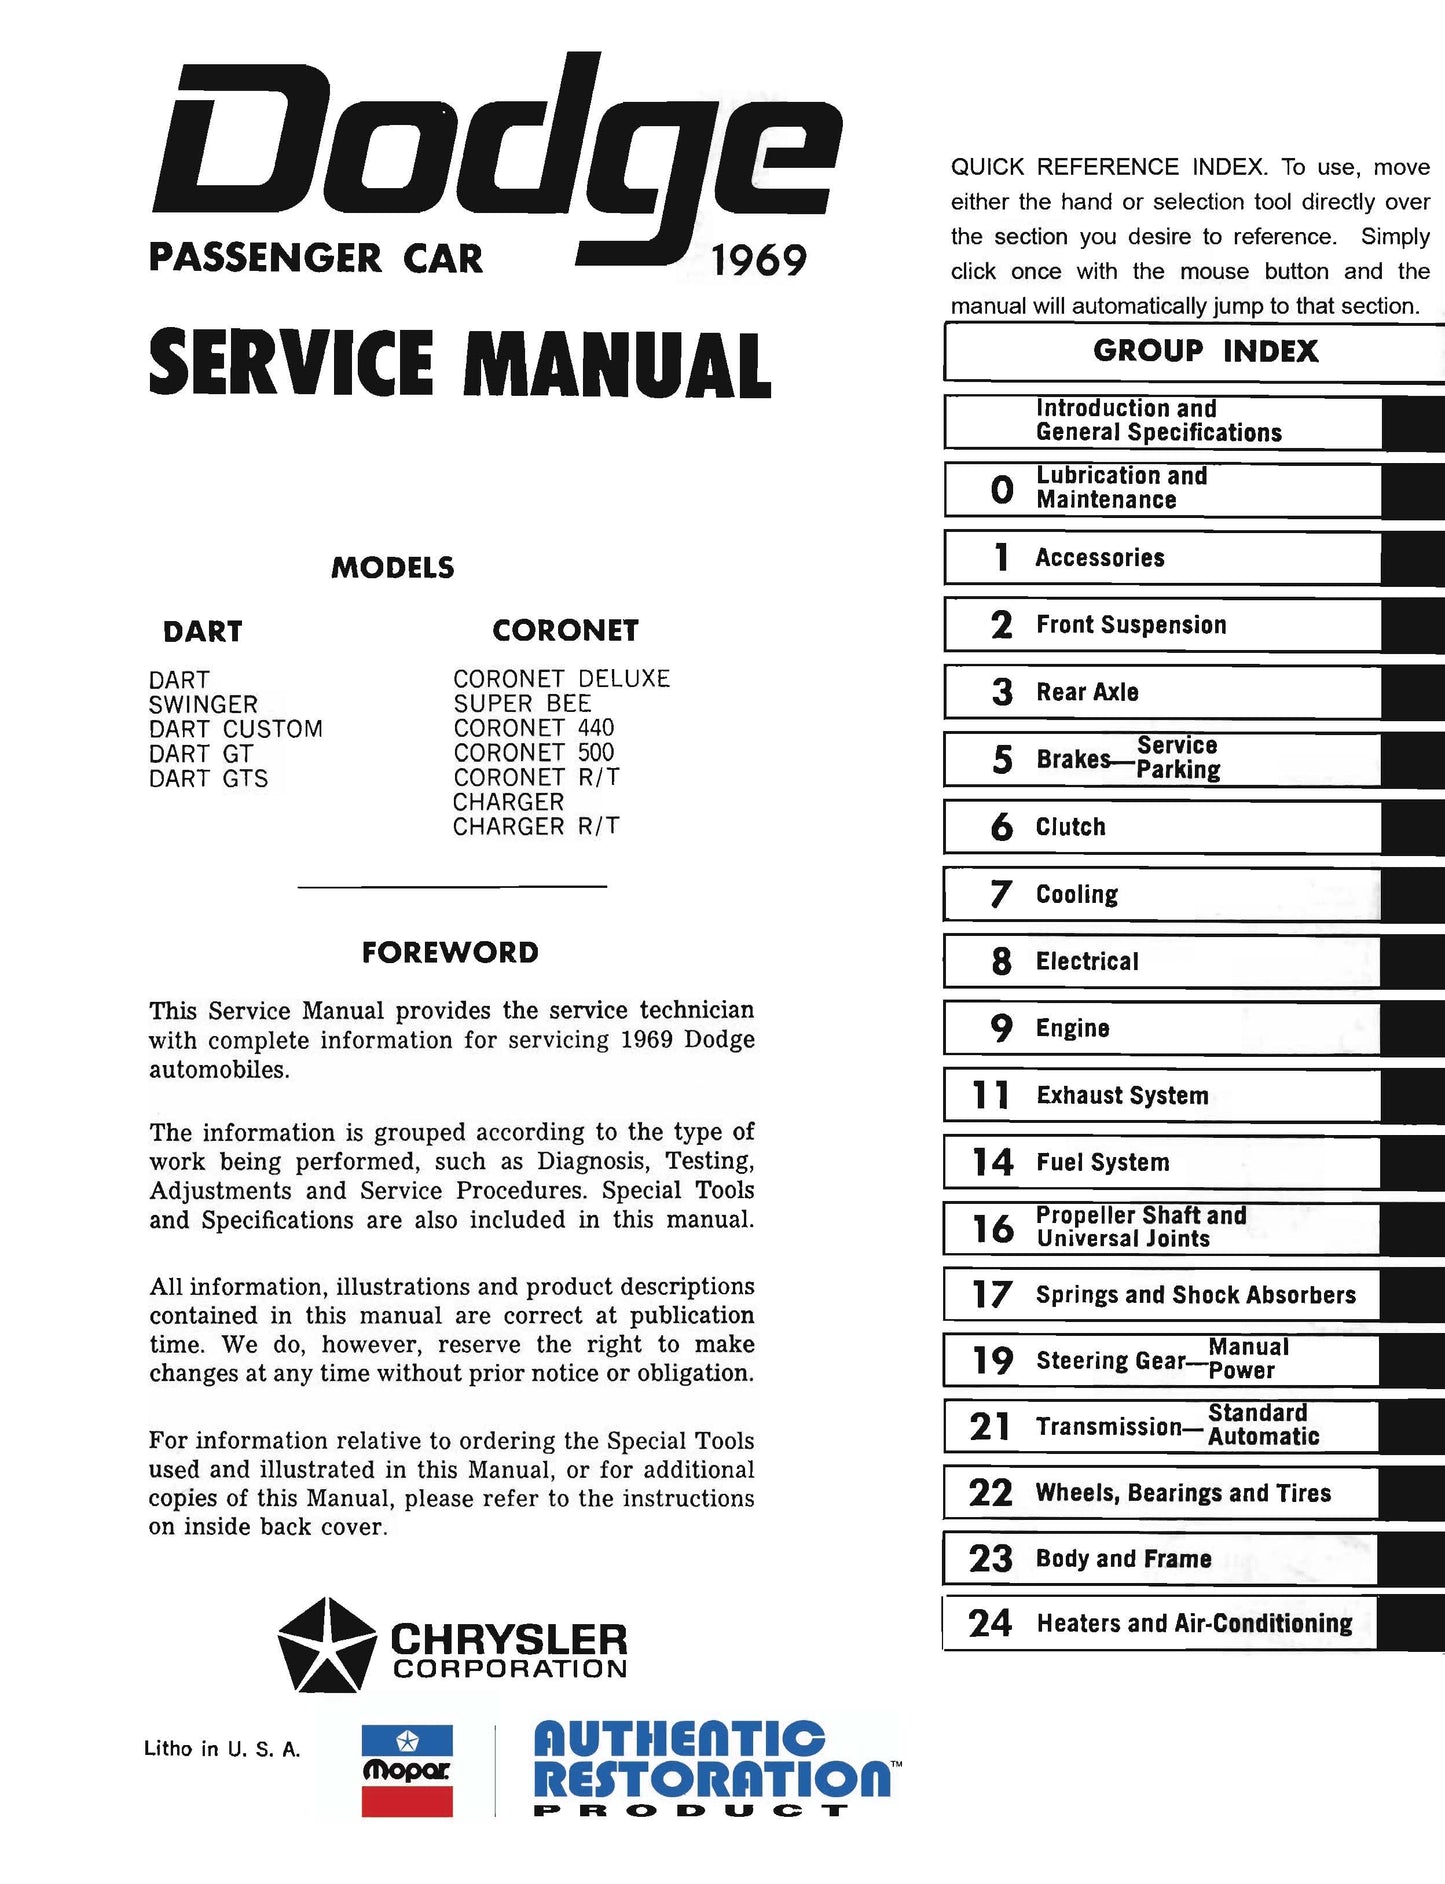 1969 Dodge Service Manuals - All Models